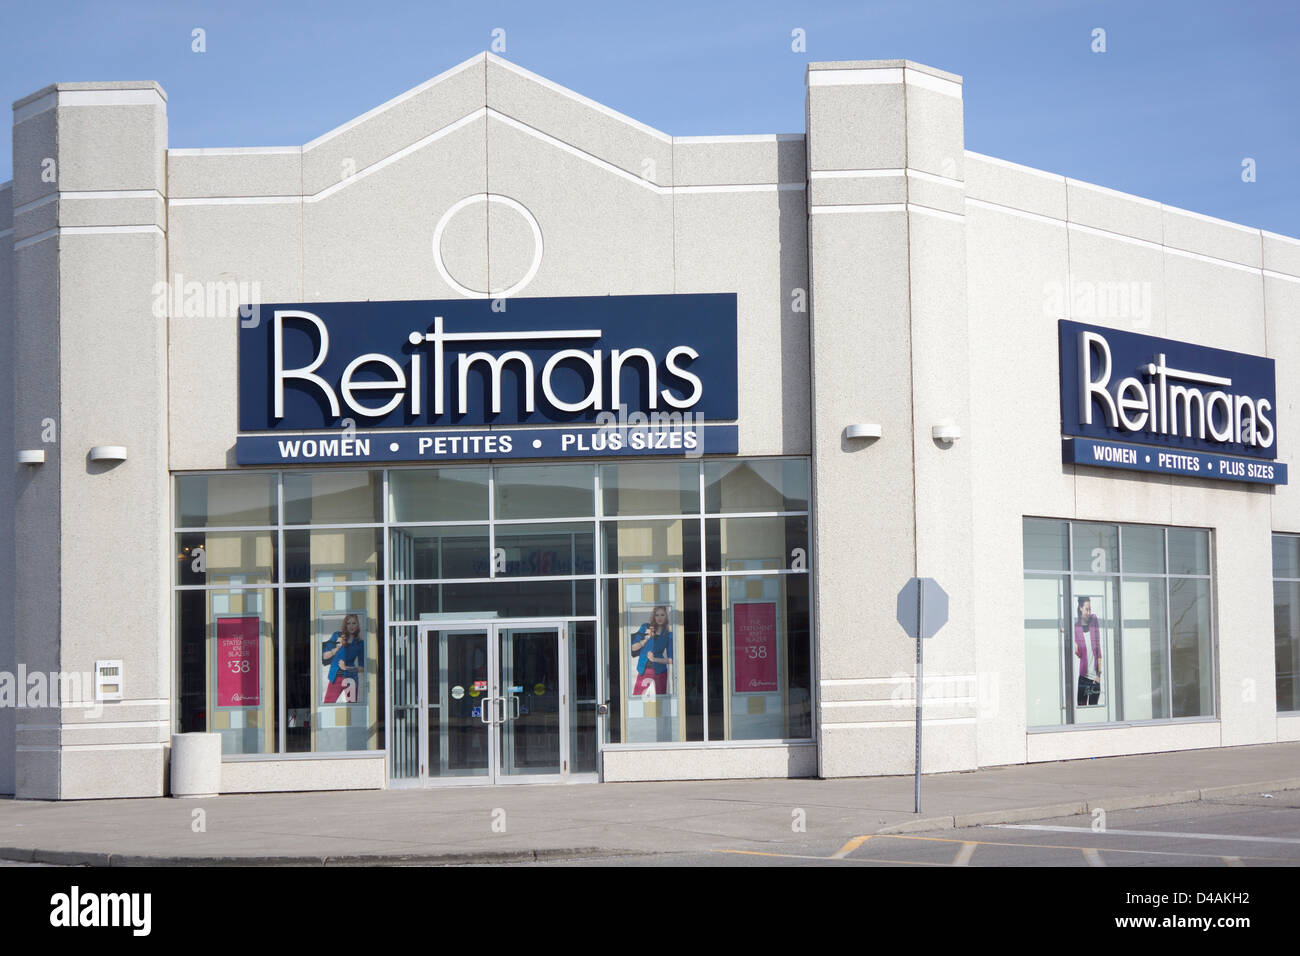 Reitmans Women's Clothing Store, Retailer Stock Photo